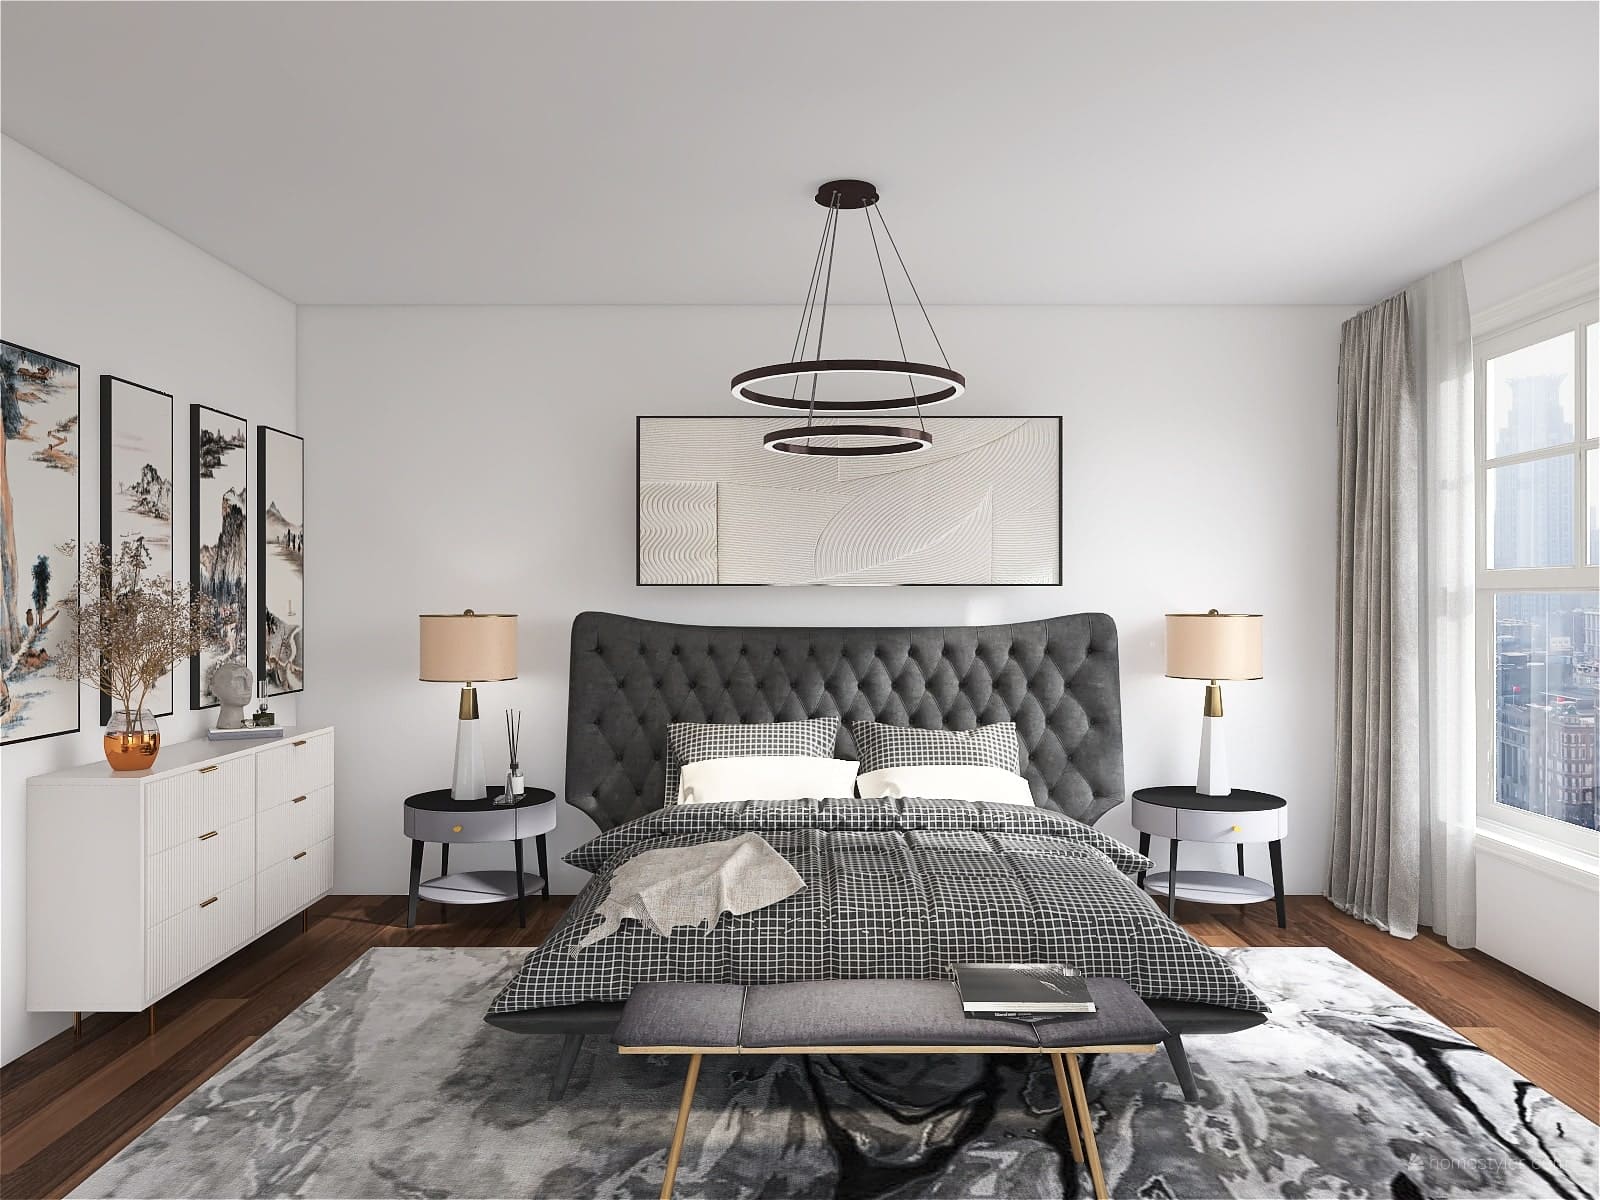 Elegance in Monochrome: A Stylish Bespoke Bedroom